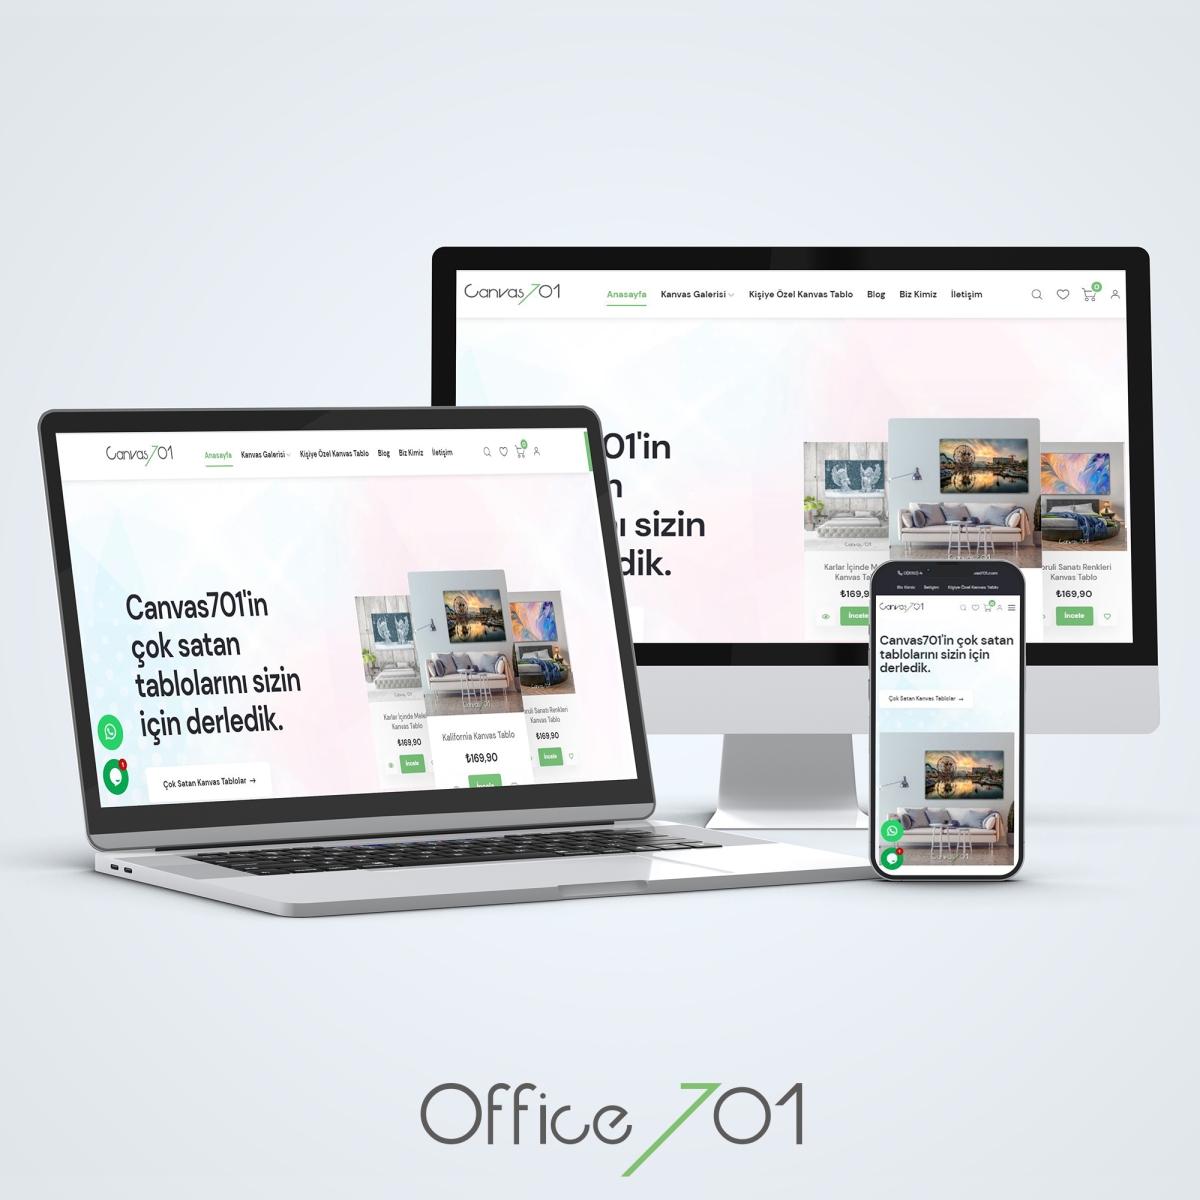 Office701 | Canvas701 E-Ticaret Sitesi (Yenilendi)